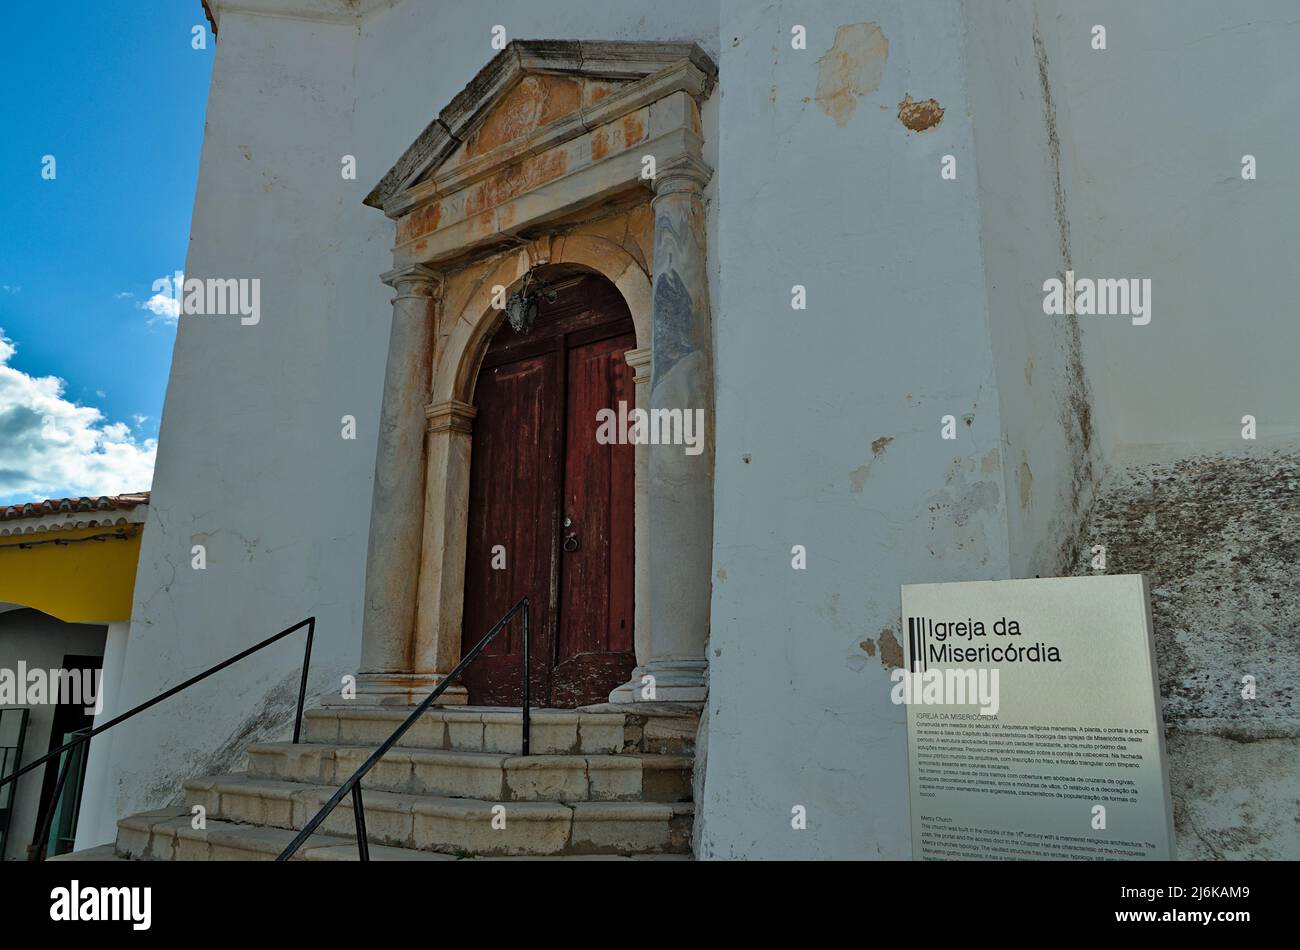 Igreja da Misericordia (Church of Mercy) in Aljustrel, Portugal Stock Photo